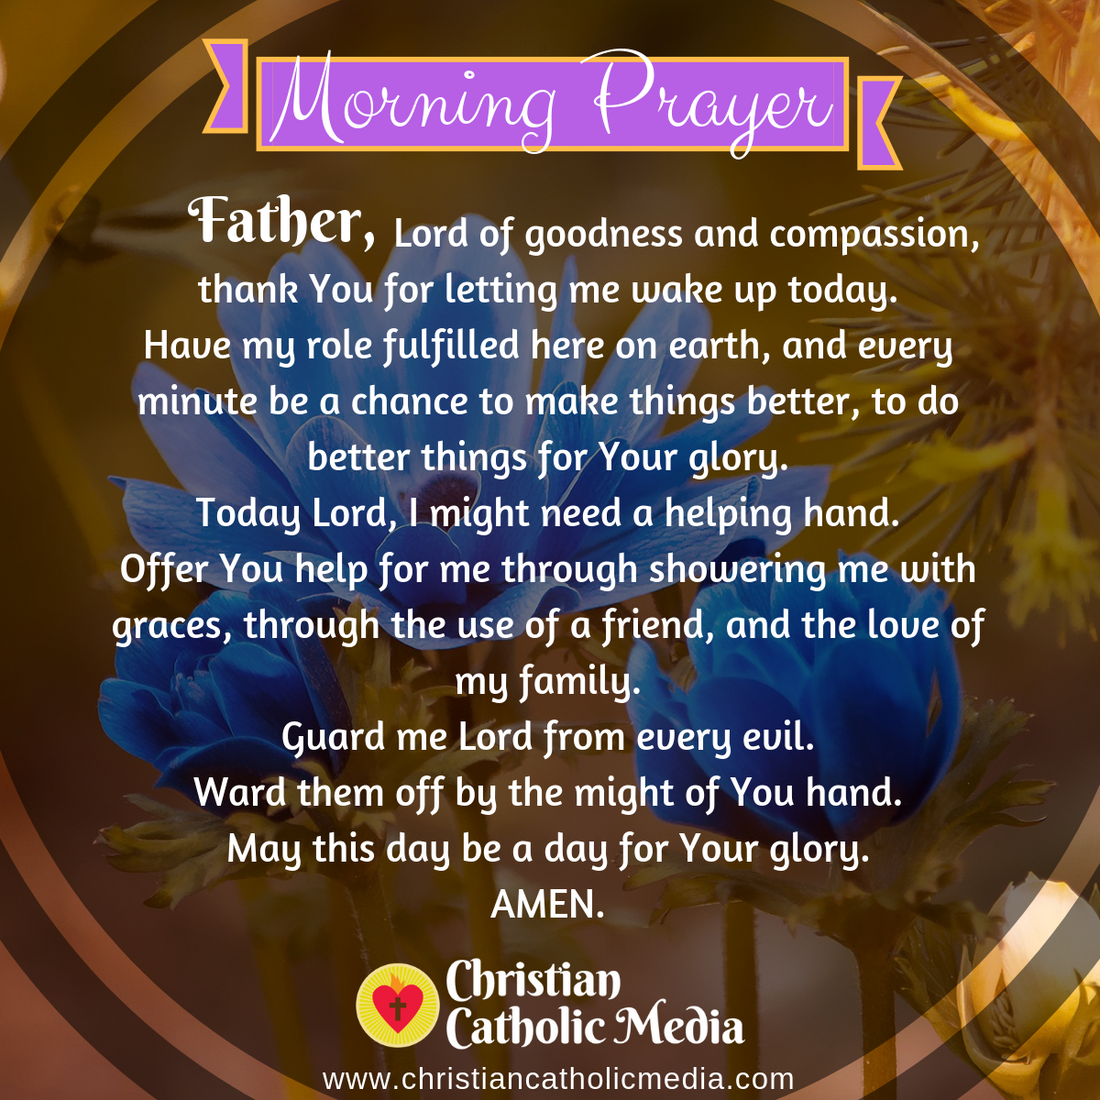 Morning Prayer Catholic Tuesday 1-7-2020